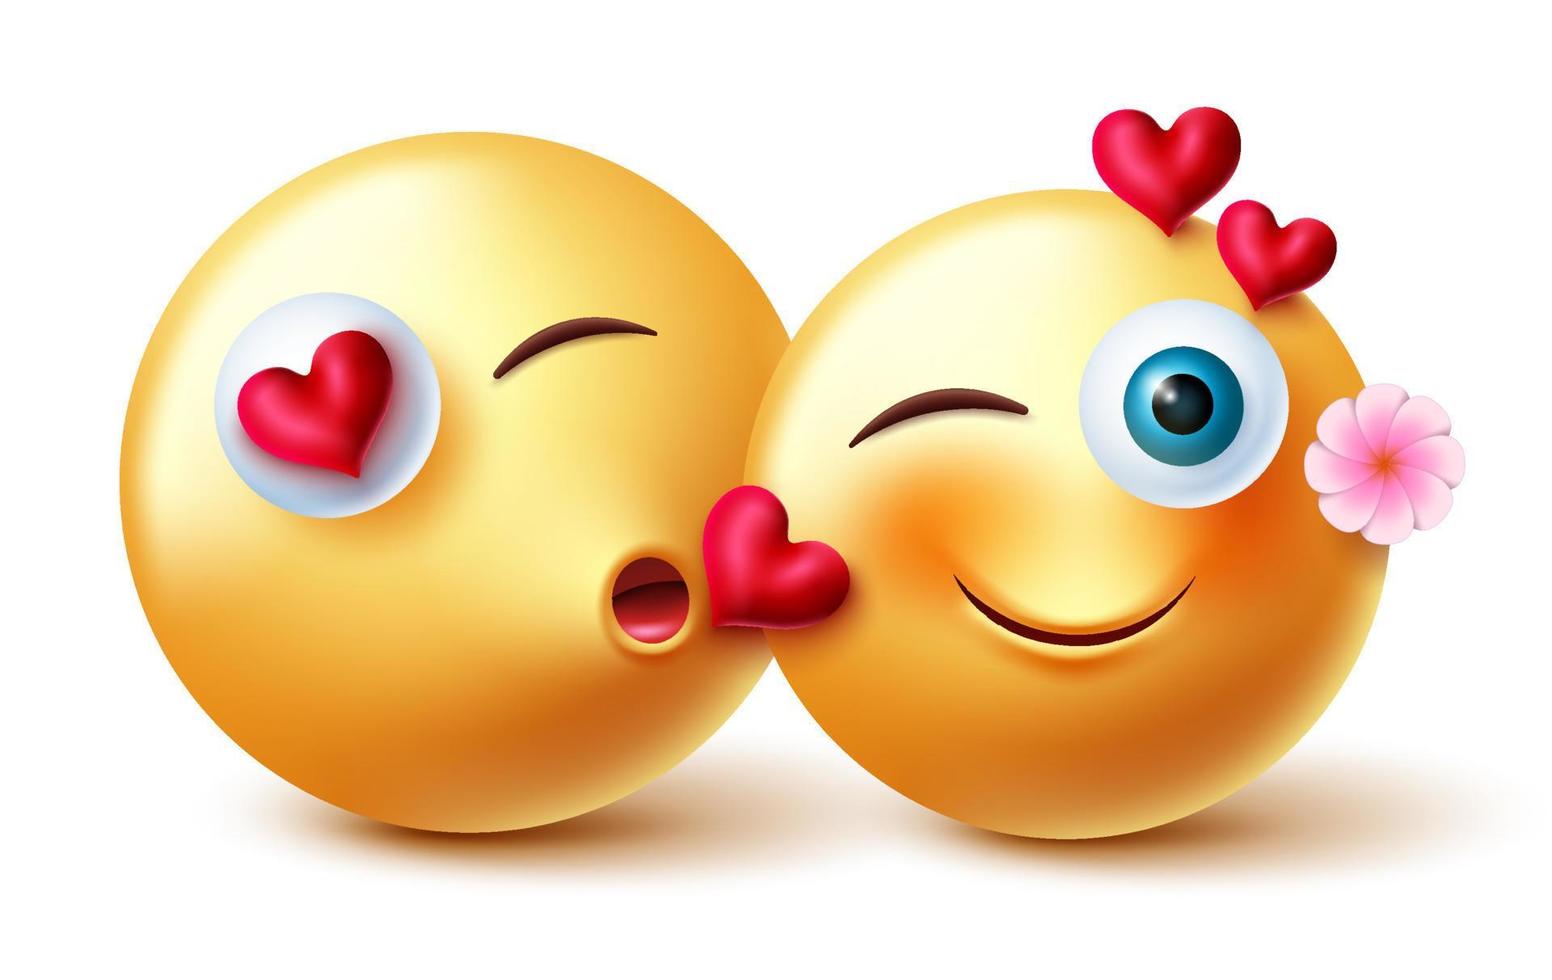 emojis valentine couple emojis vector design. inlove personnages d'émoticônes emoji 3d en embrassant une expression romantique et un geste pour le concept de personnage amoureux de la Saint-Valentin. illustration vectorielle.